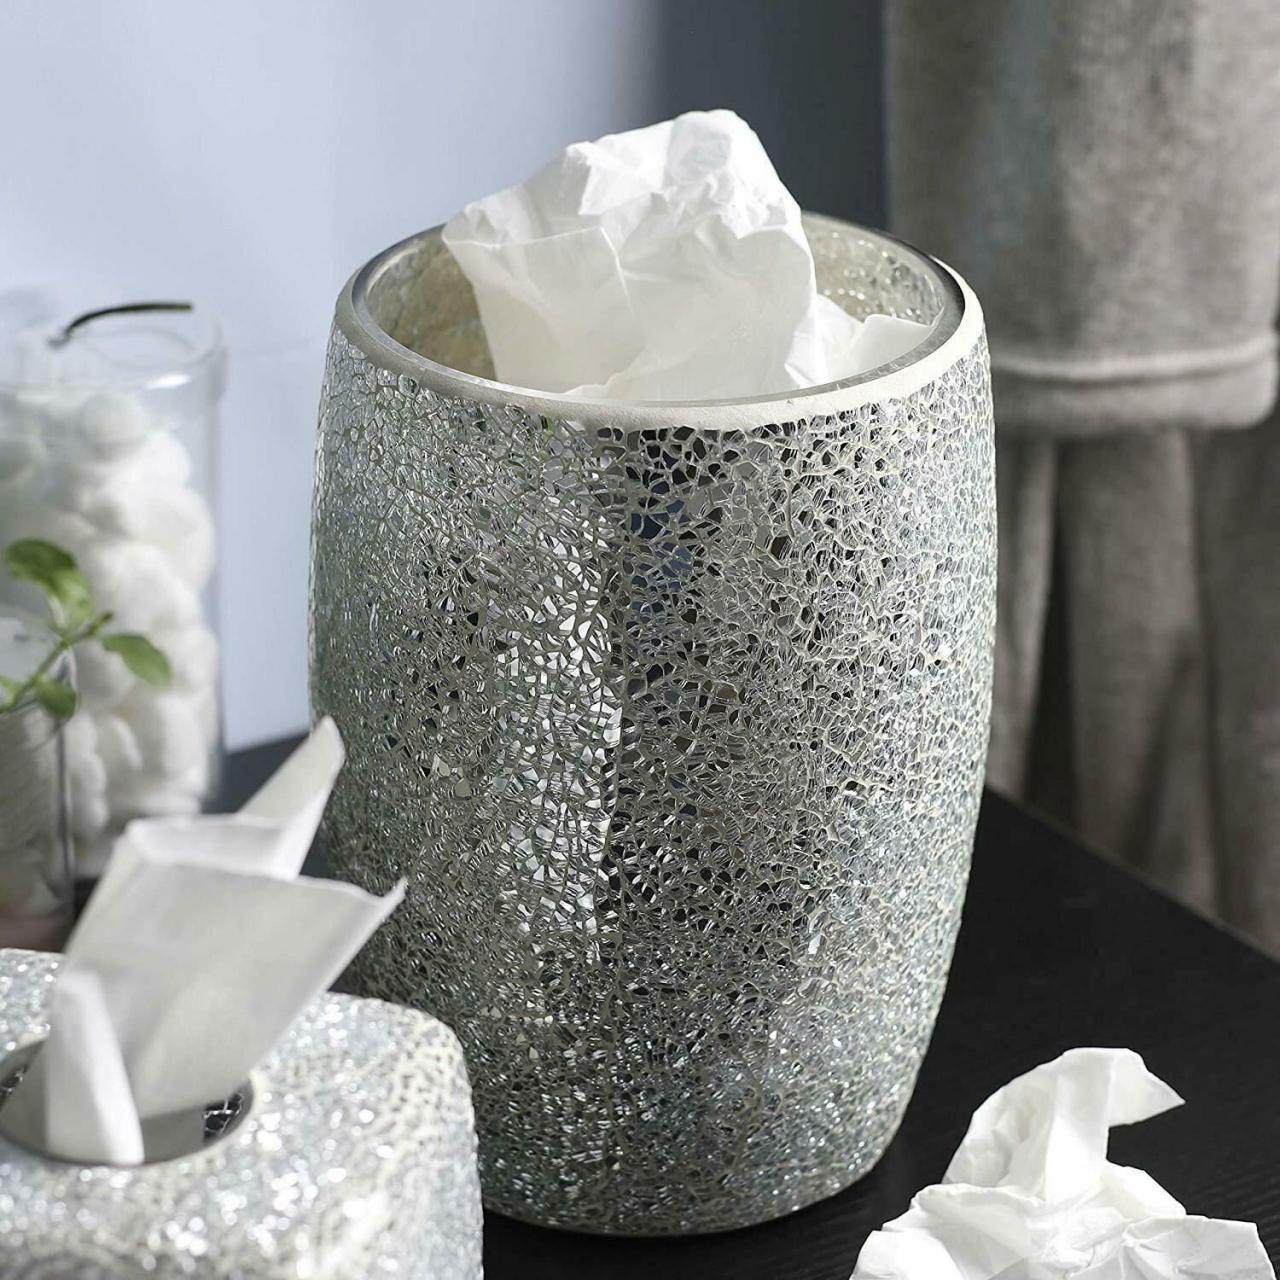 Decorative Silver Mosaic Glass Wastebasket/Trash Can Bathroom